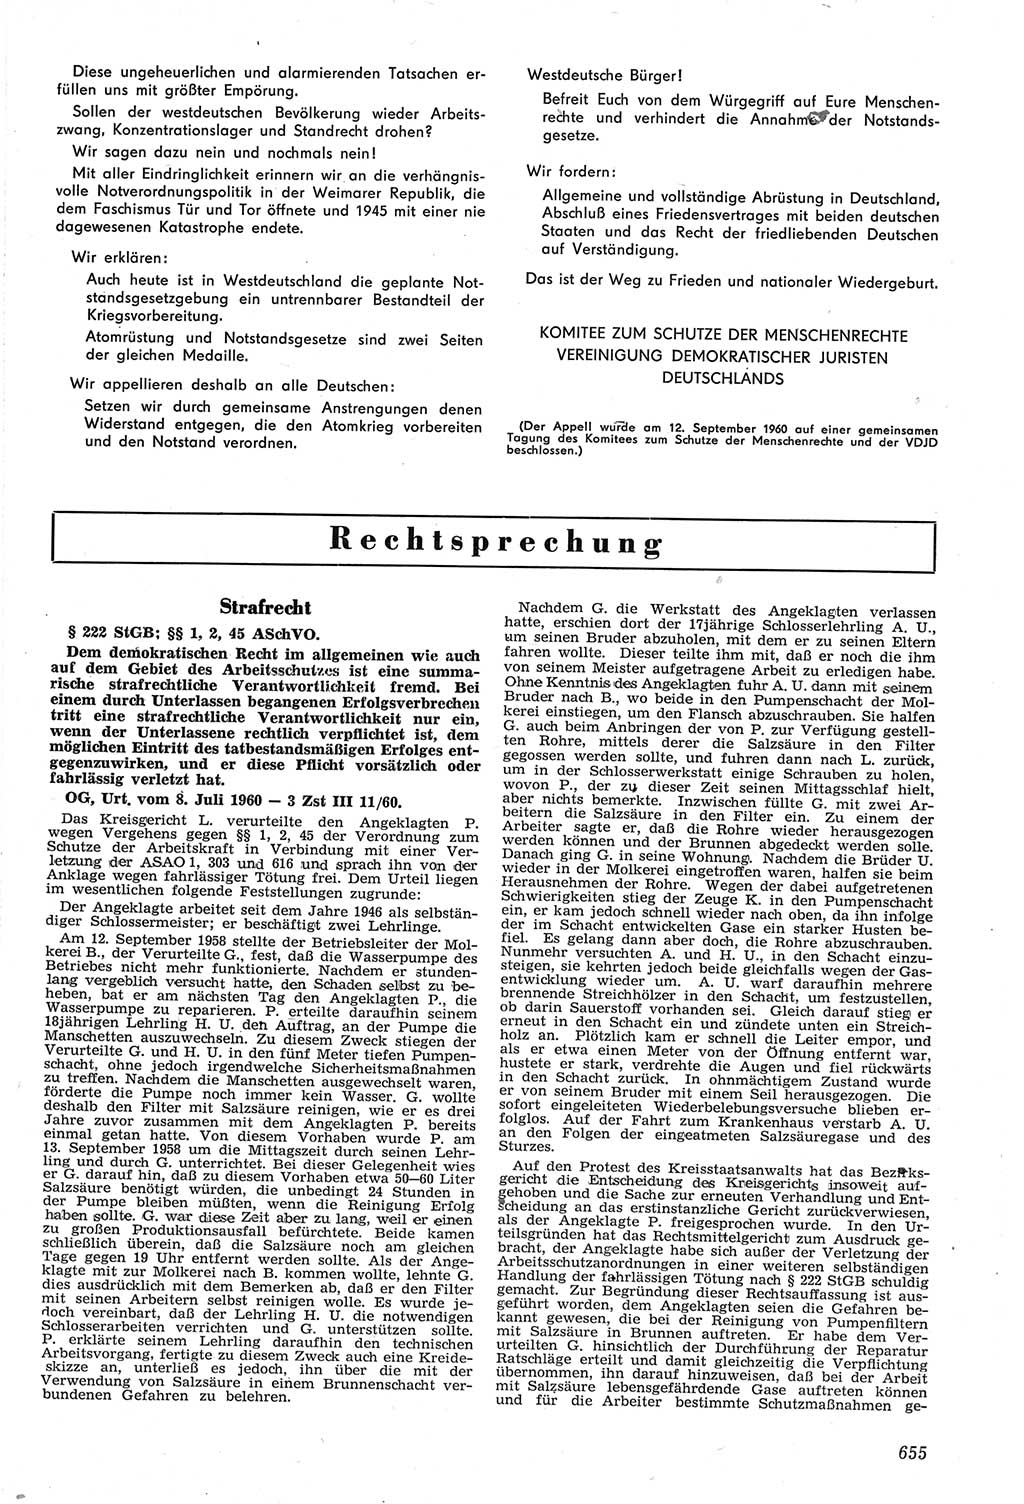 Neue Justiz (NJ), Zeitschrift für Recht und Rechtswissenschaft [Deutsche Demokratische Republik (DDR)], 14. Jahrgang 1960, Seite 655 (NJ DDR 1960, S. 655)